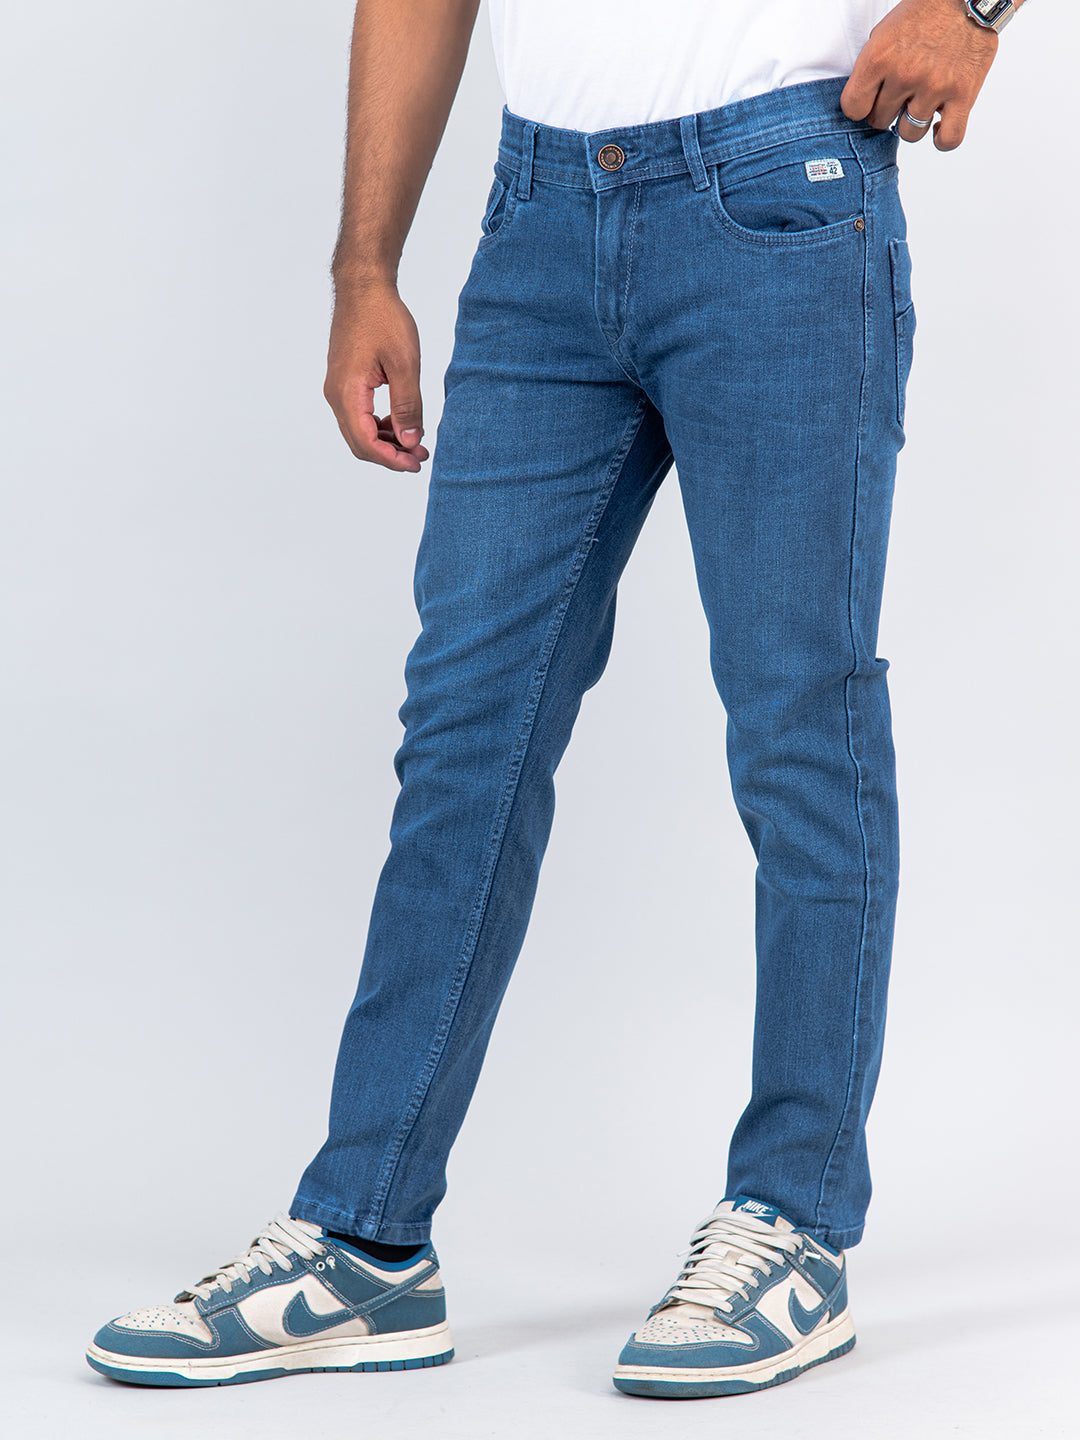 Buy Light Blue Slim-Fit Ankle Length Mens Jeans Online